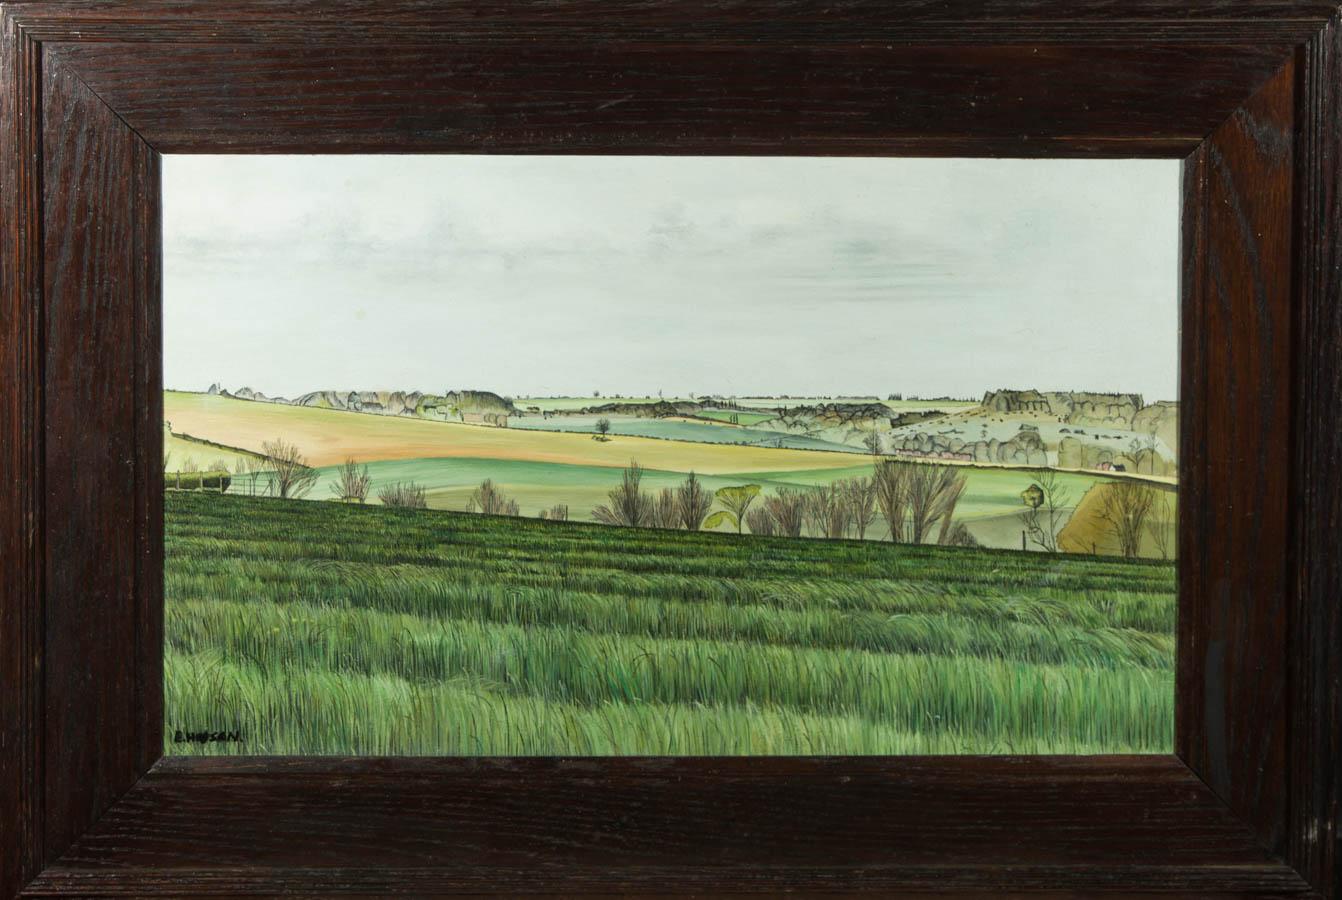 Un bel exemple du travail de l'artiste britannique Eric Huson. La scène représente un paysage anglais au début du printemps, avec ses contours typiques et ses larges étendues de terre. La finesse des coups de pinceau, les éléments stylisés et la